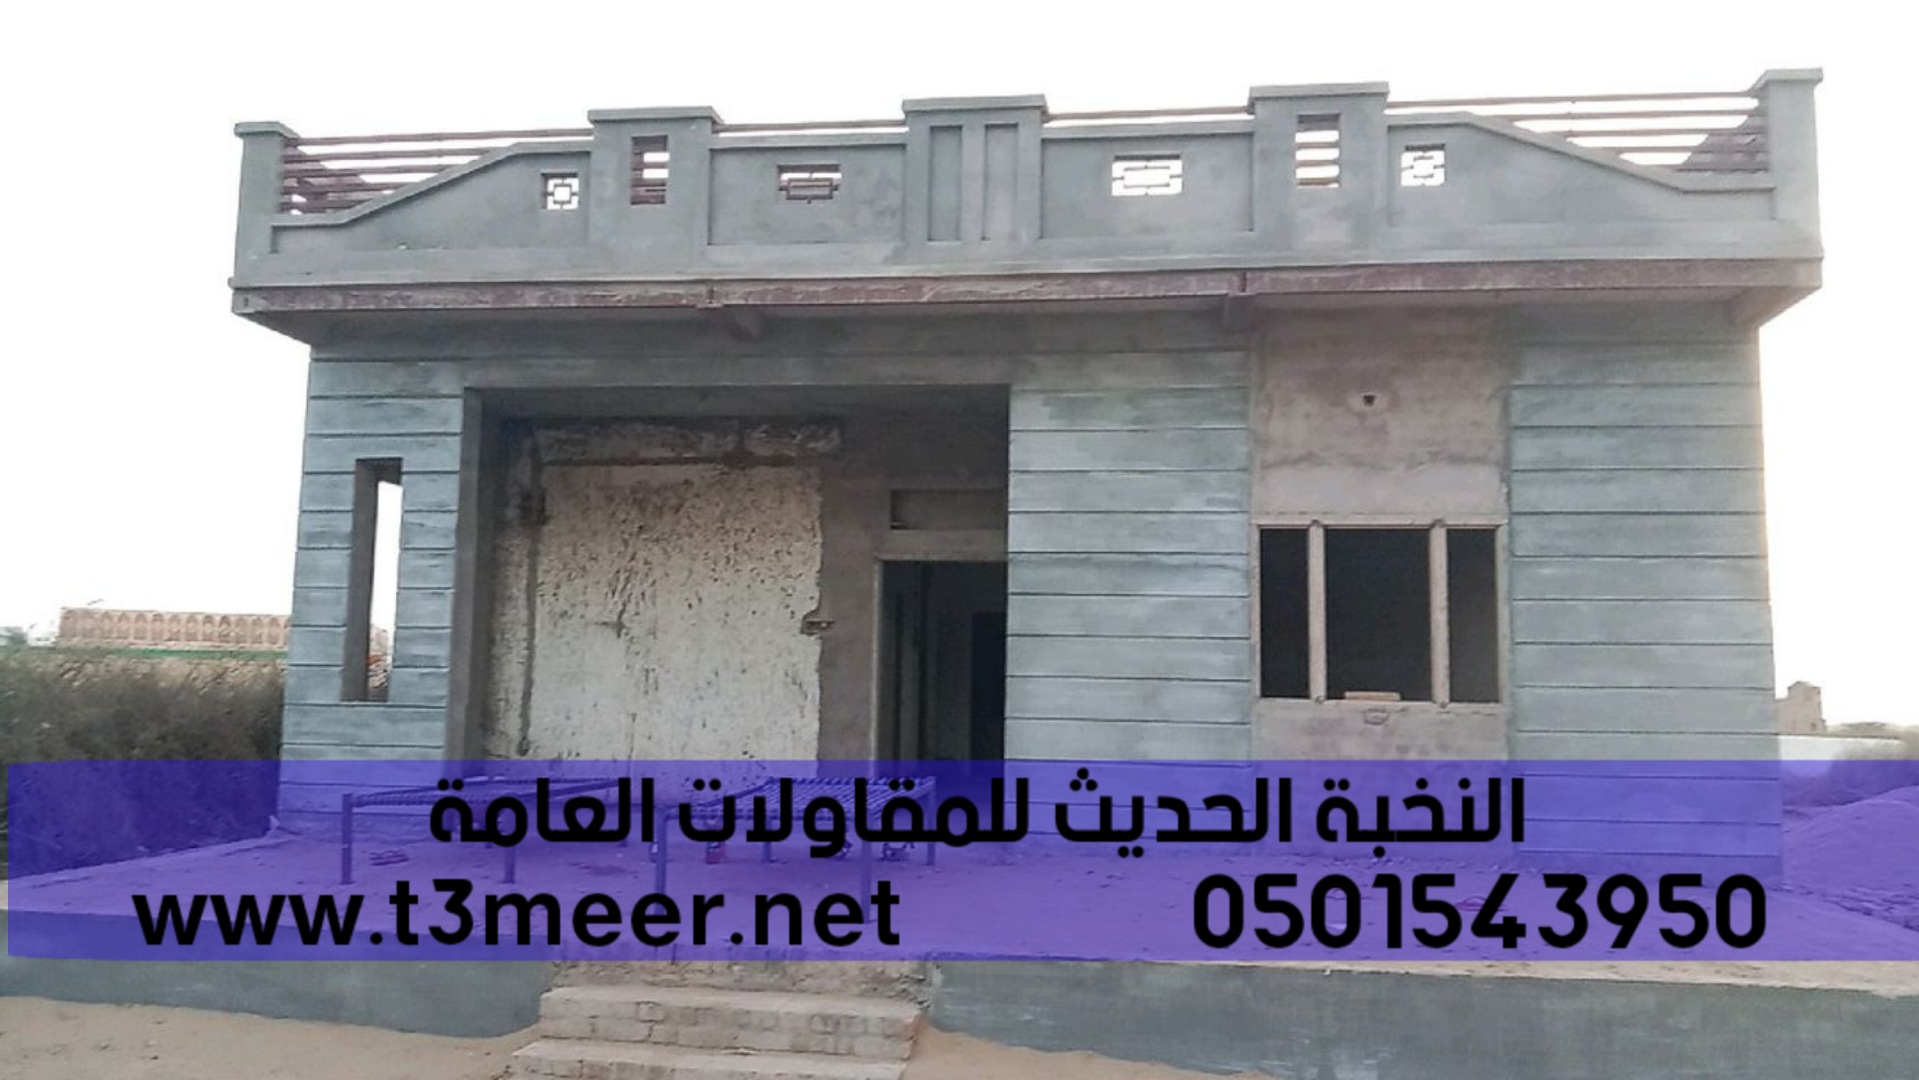 افضل مؤسسة بناء ترميم تشطيب مباني في جدة , 0501543950 P_2275dlu0a3